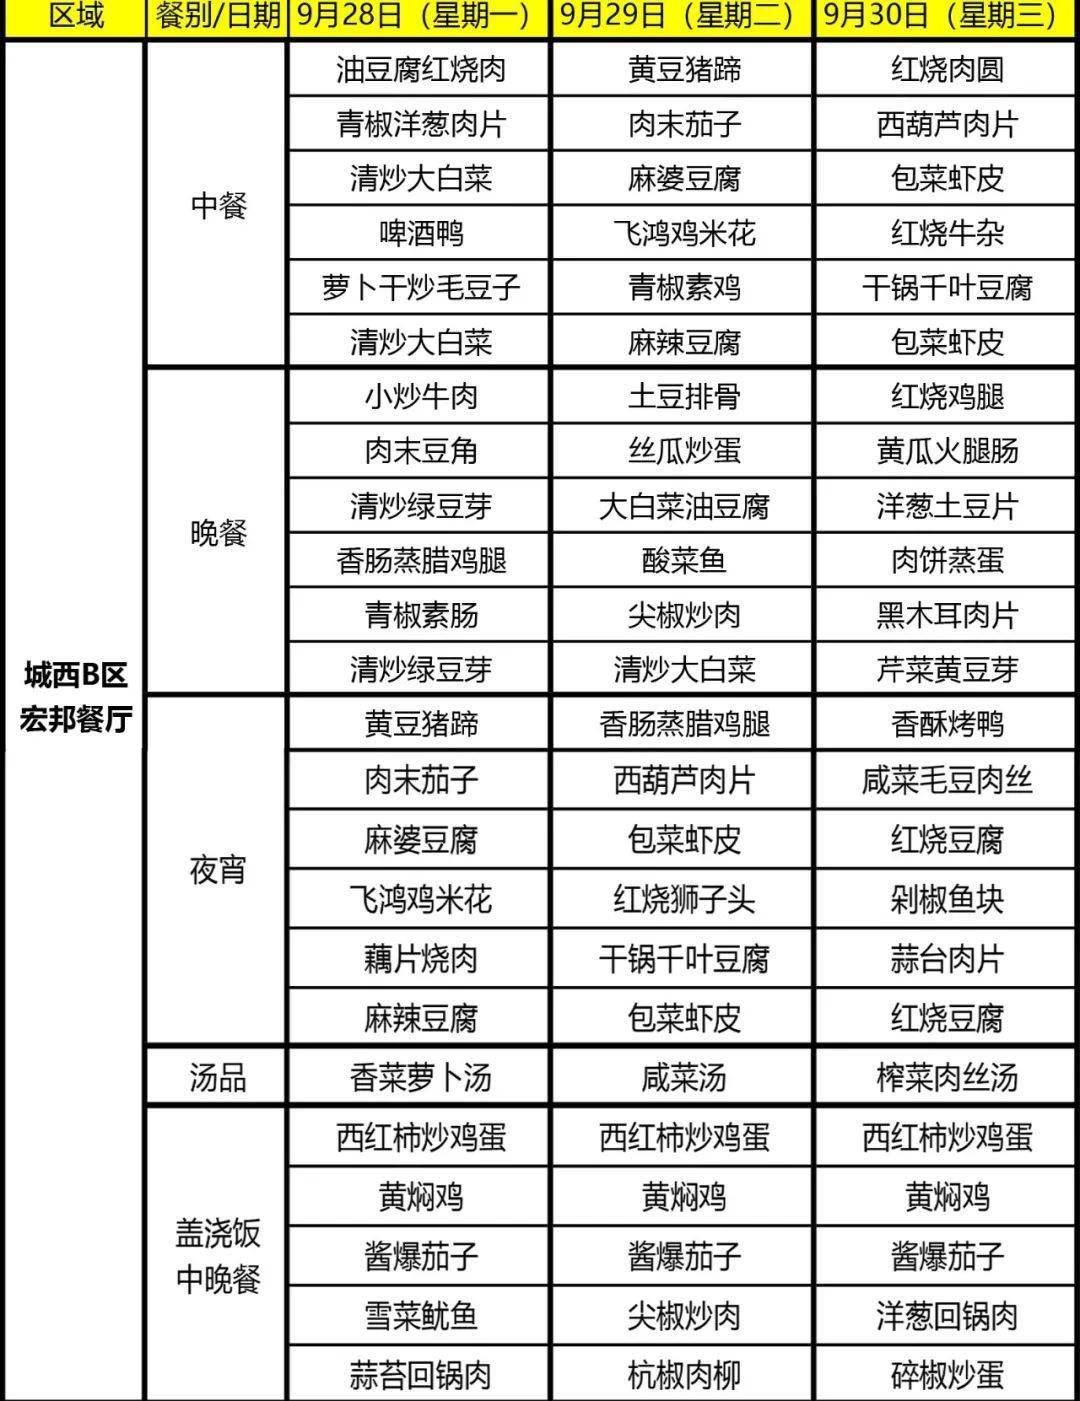 舜宇食堂本周菜单(9月28日-10月4日),记得收藏哦!